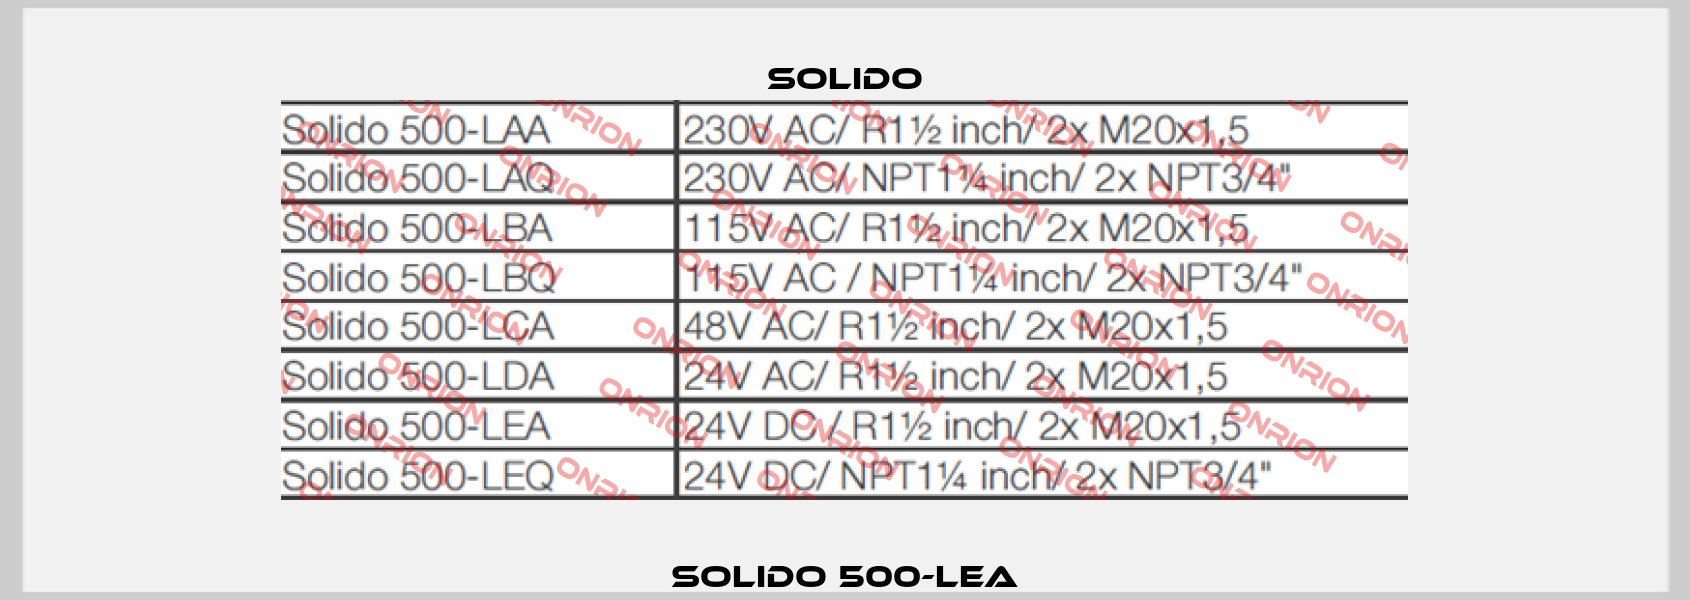 SOLIDO 500-LEA Solido